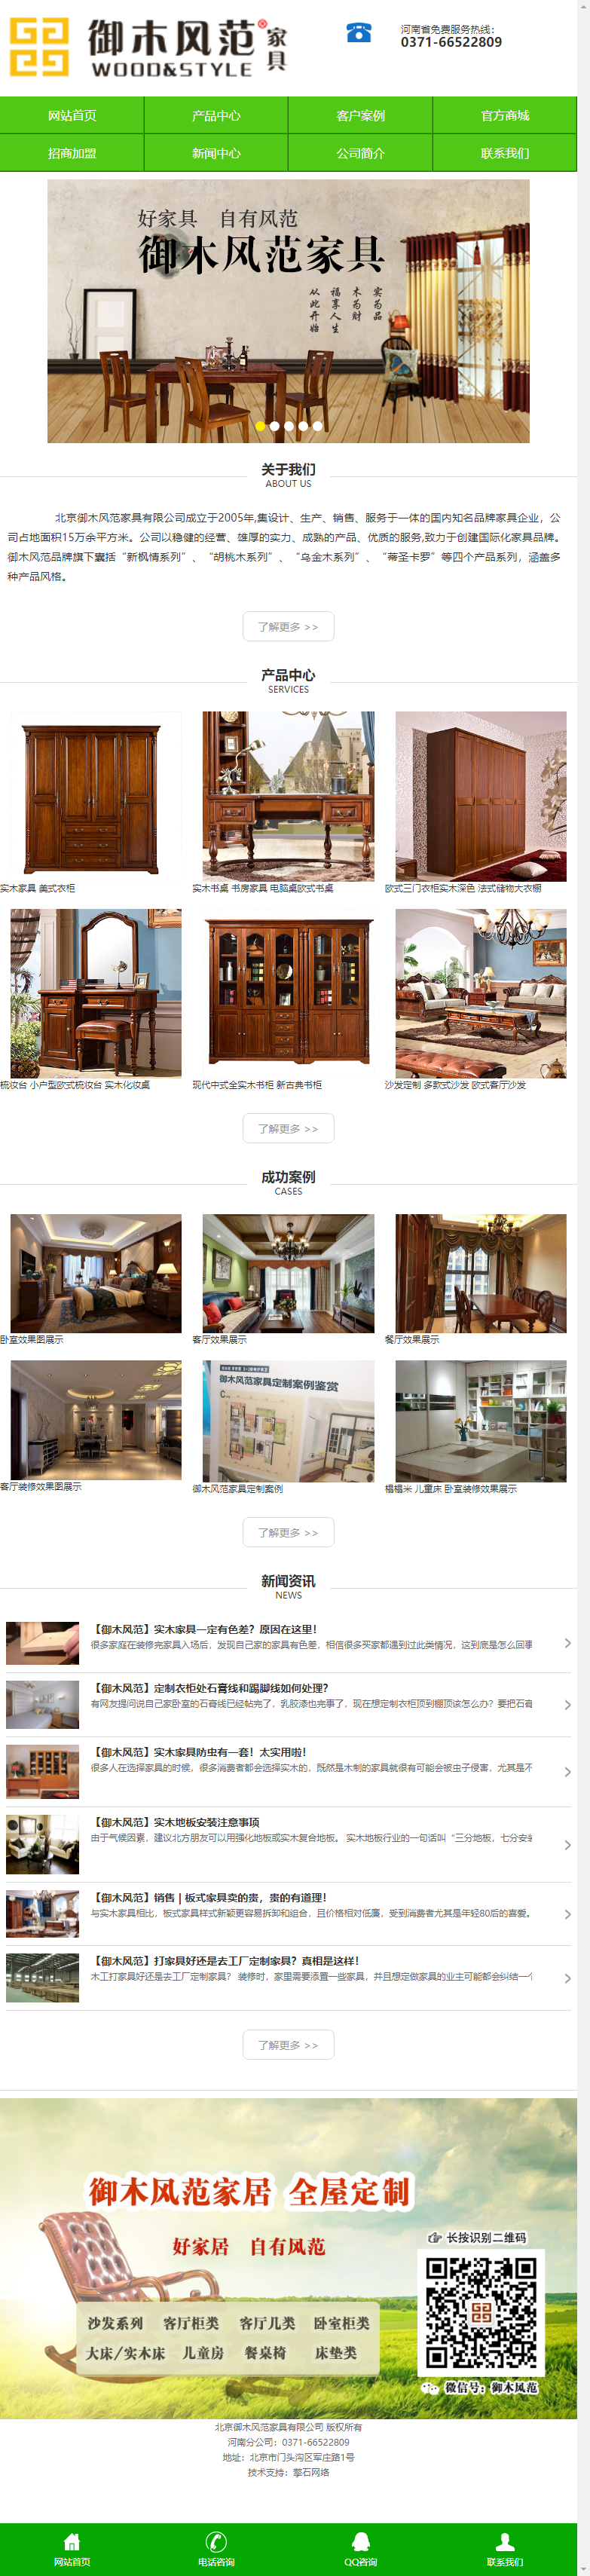 河南省御木风范家具有限公司网站案例